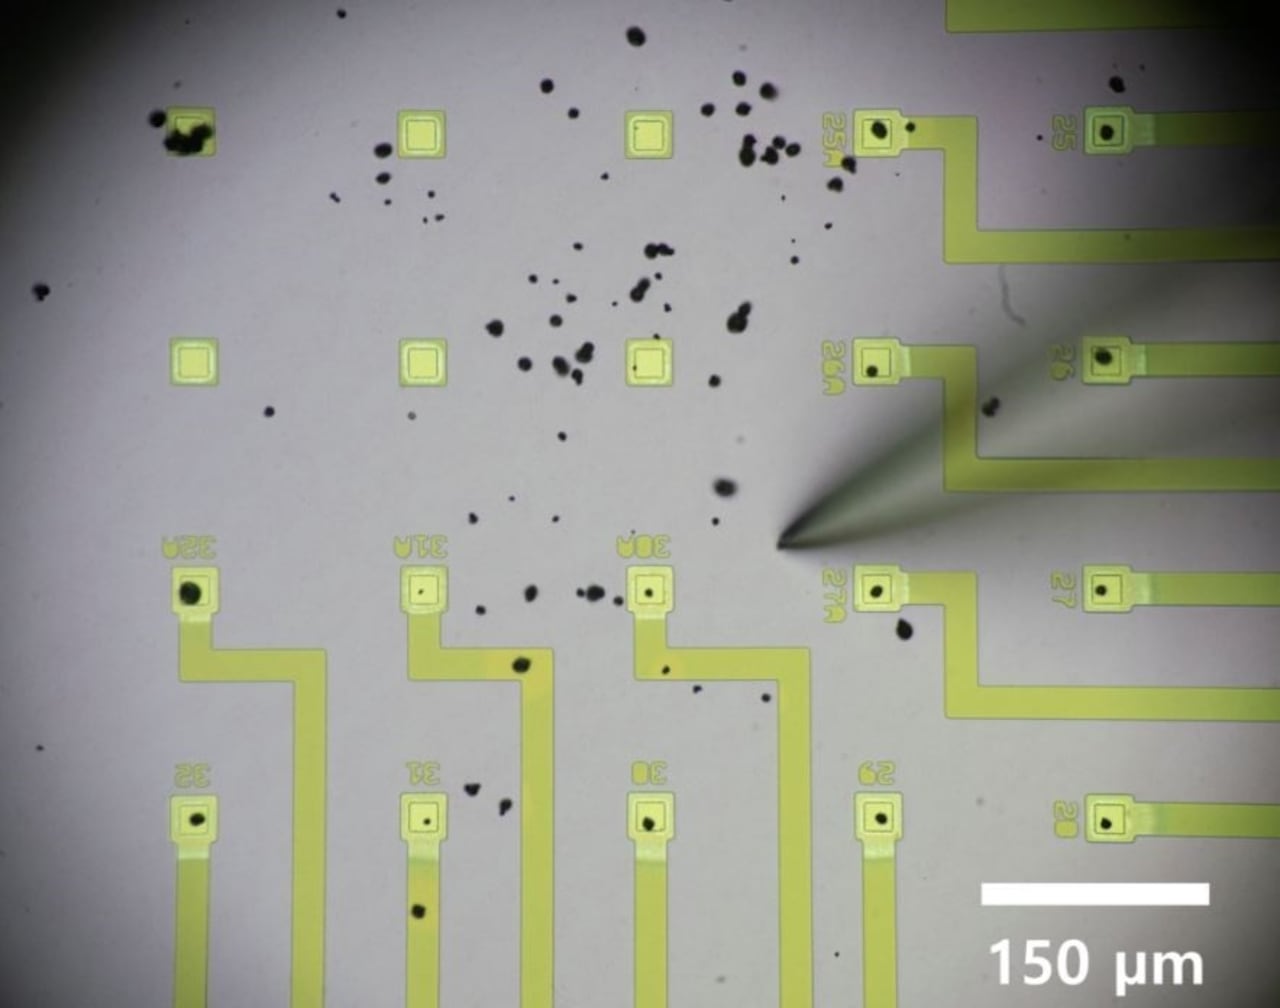 Científicos pueden mover las partículas de la batería (puntos negros) a los microelectrodos (cuadrados amarillo-verde) usando microagujas.